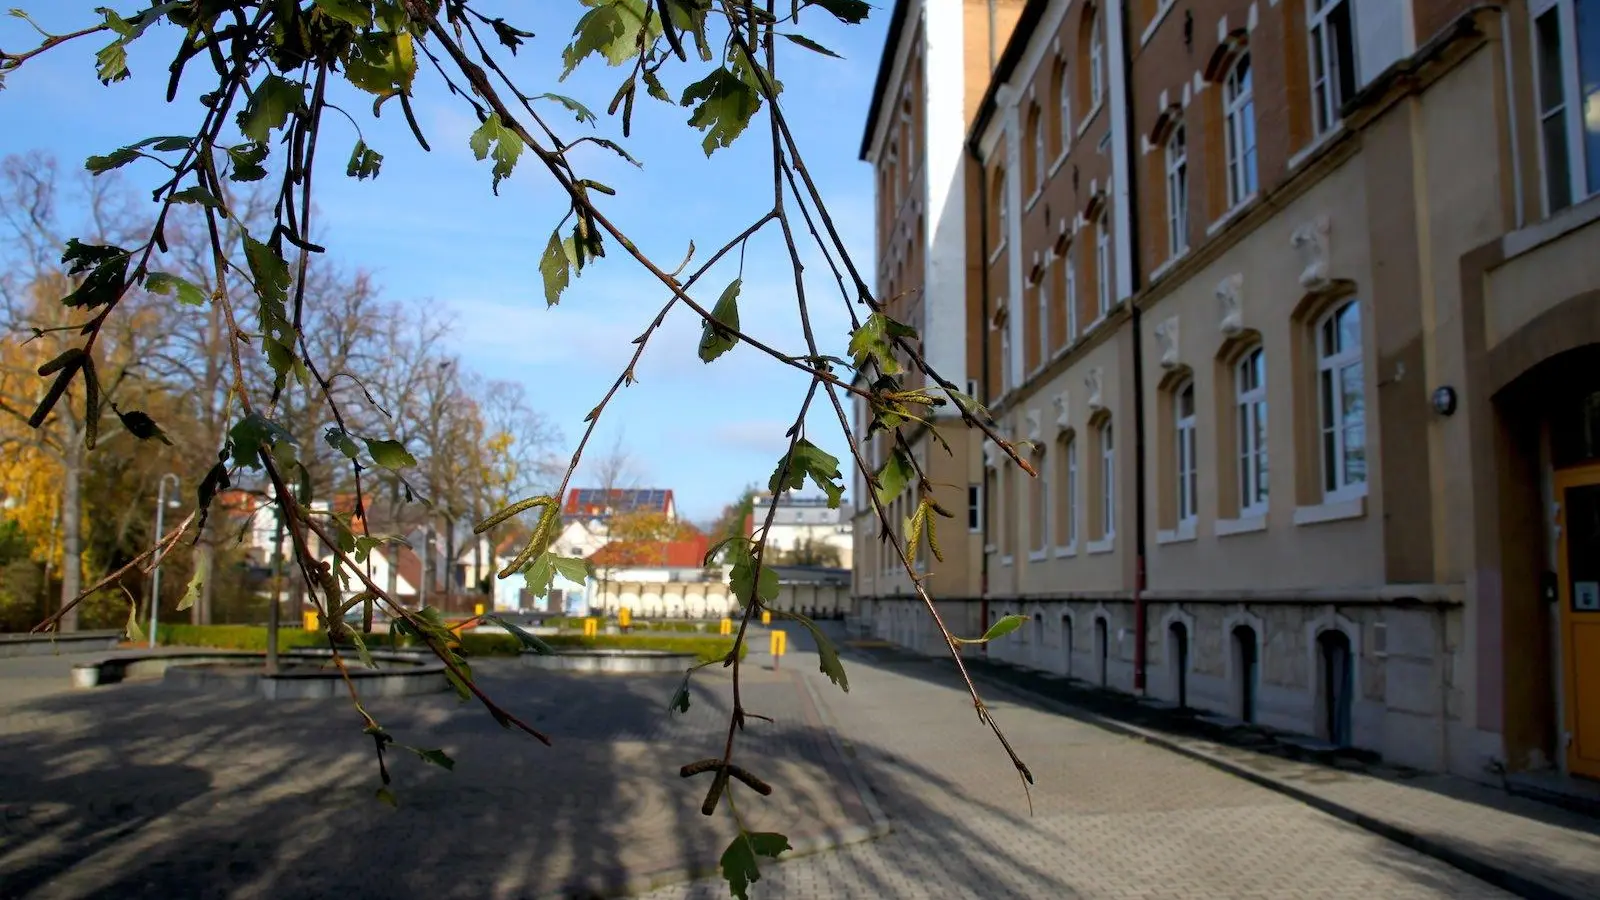 Gestört aber GeiL kommen ans Gymnasium Taucha (Foto: taucha-kompakt.de)